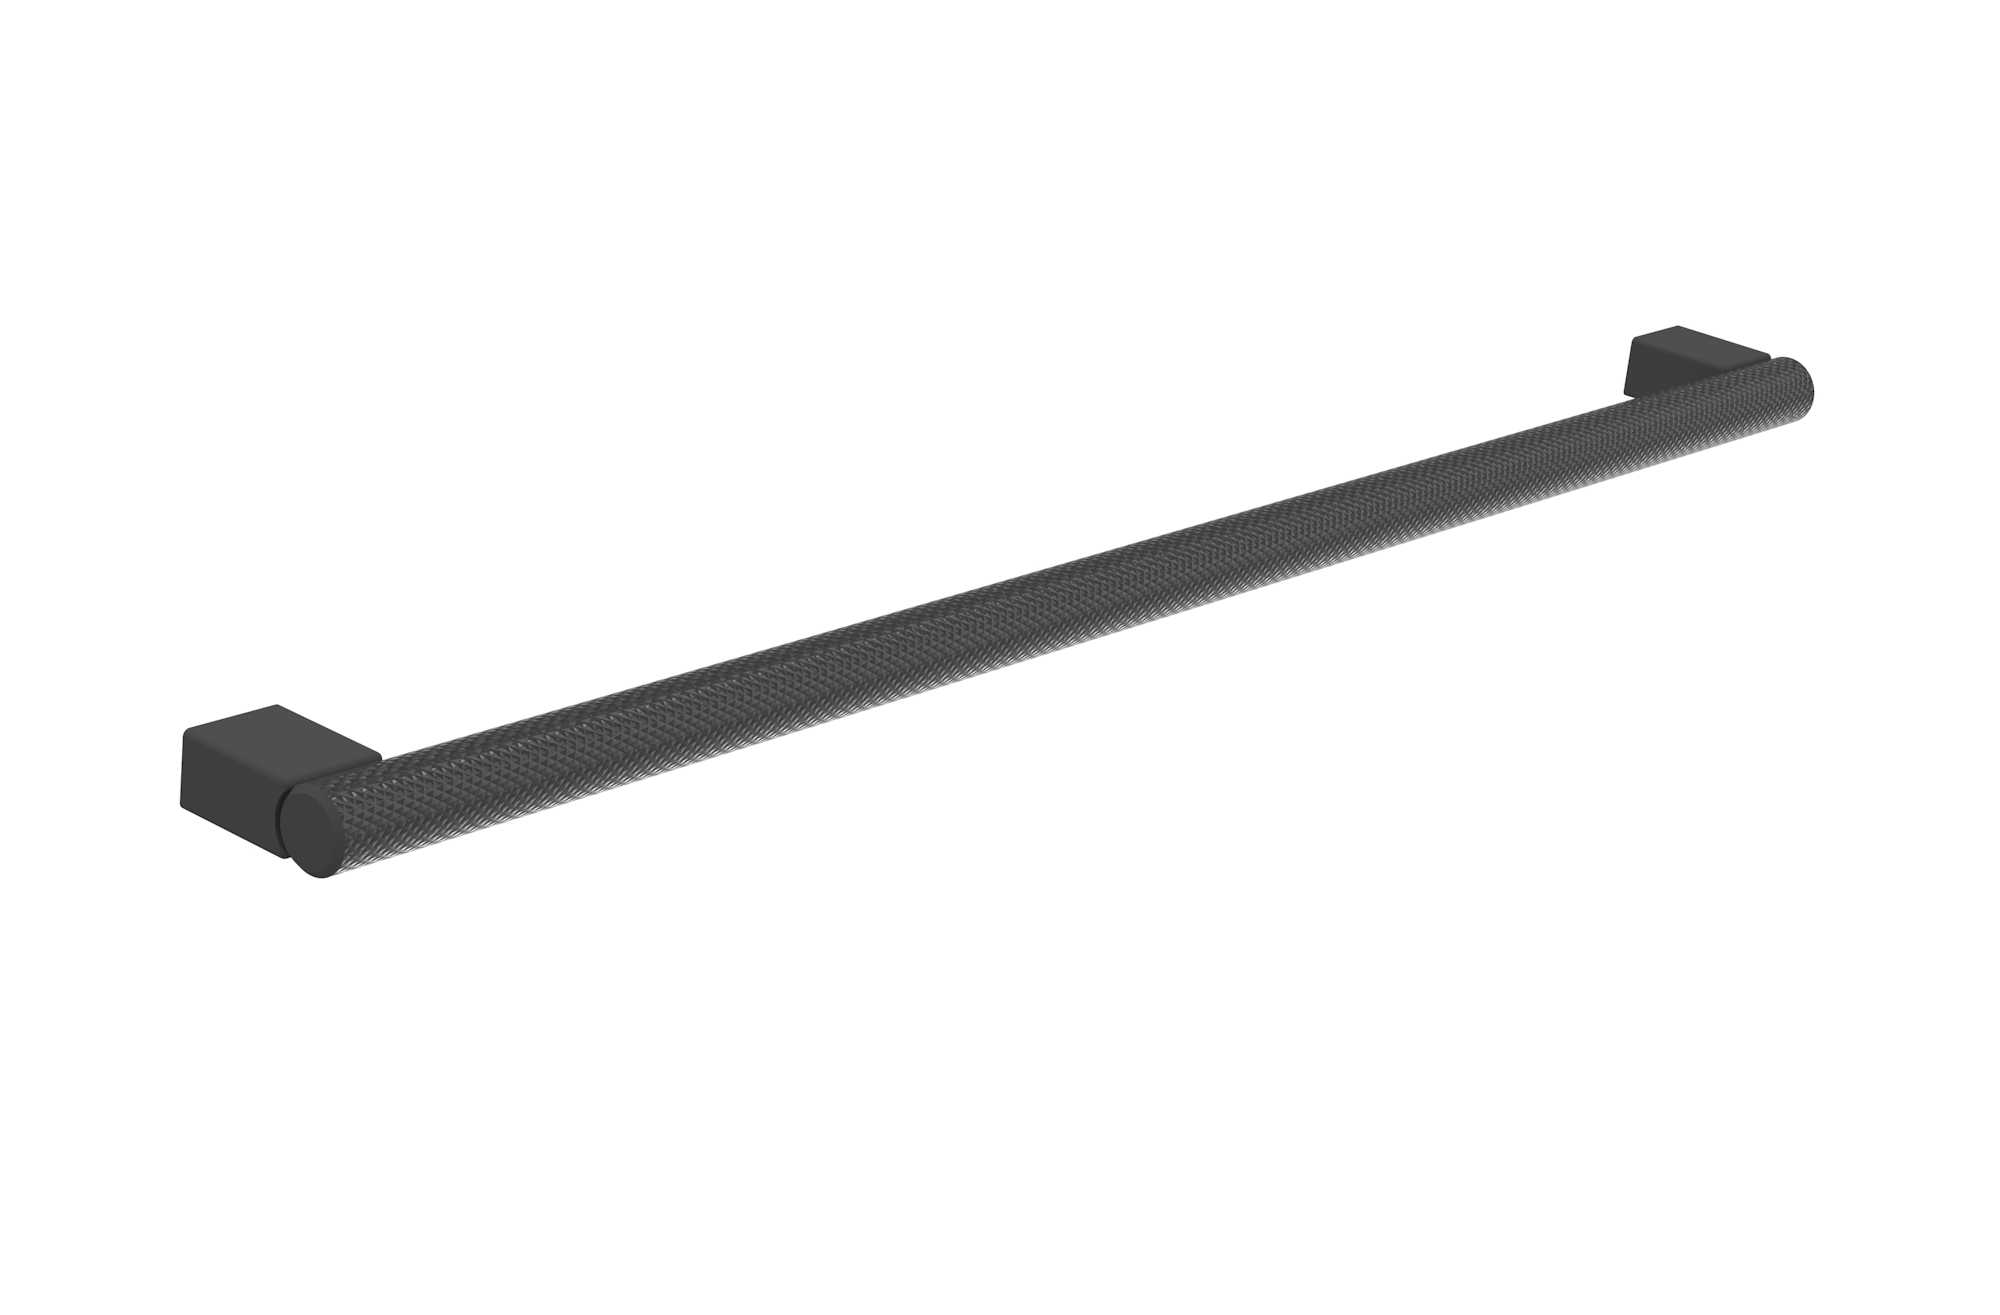 MADRID 320mm knurled handle - Stainless Steel Matte Black